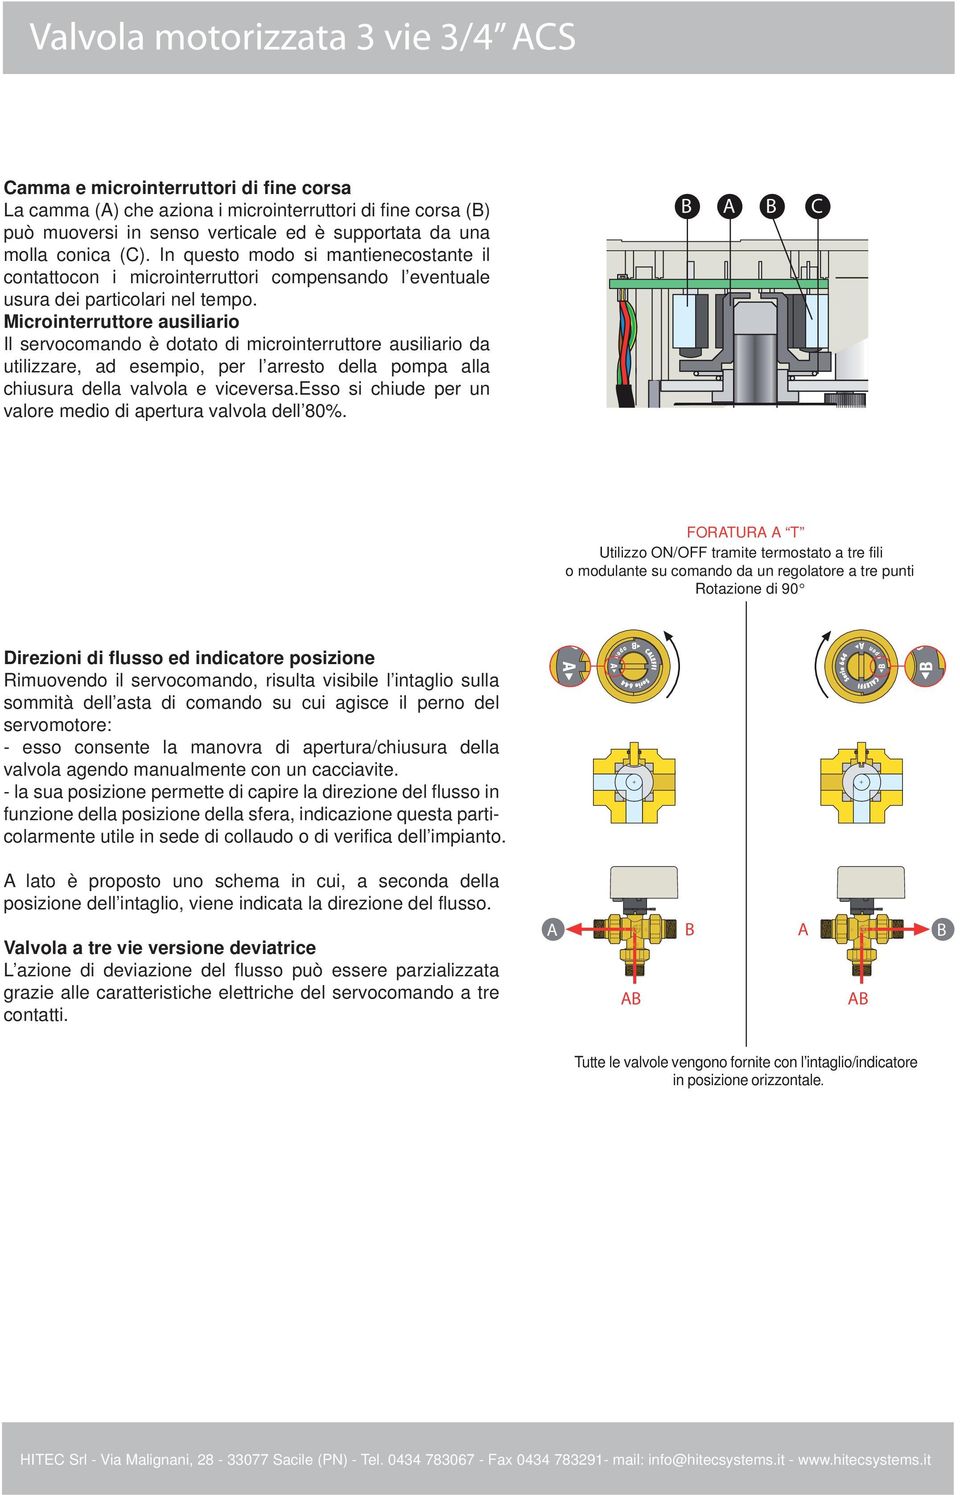 Microinterruttore ausiliario Il servocomando è dotato di microinterruttore ausiliario da utilizzare, ad esempio, per l arresto della pompa alla chiusura della valvola e viceversa.